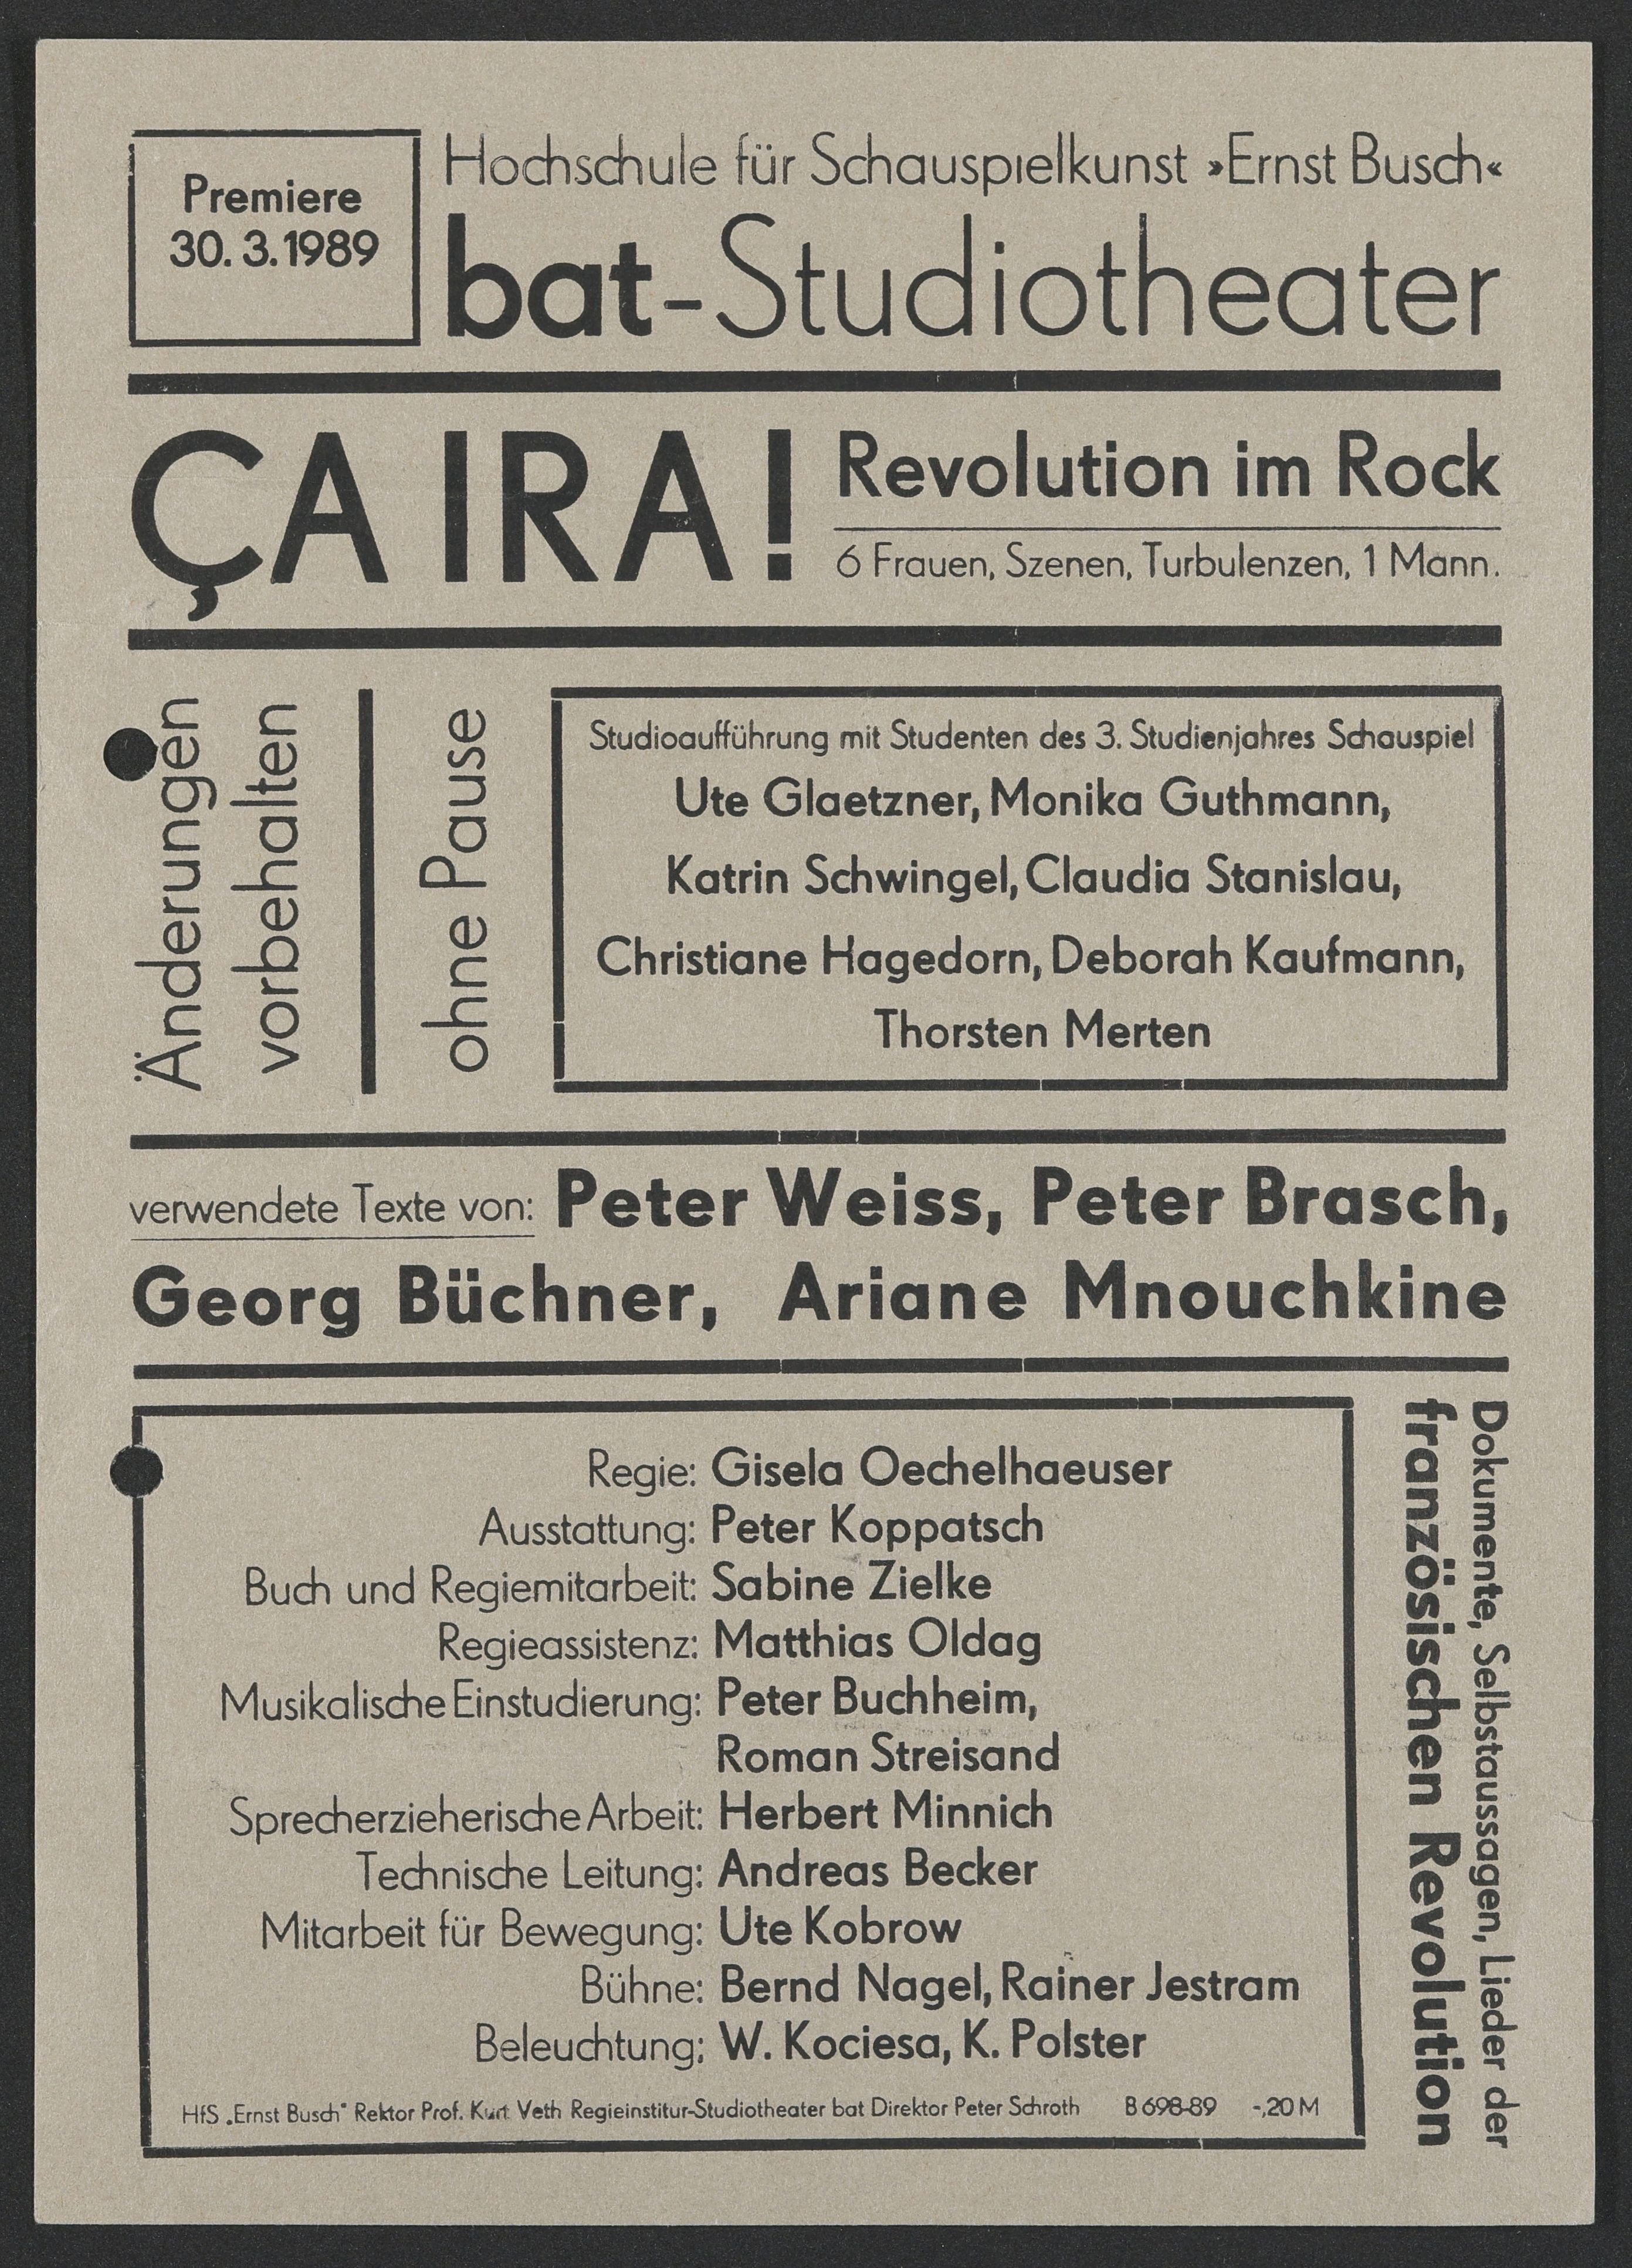 Programmzettel zu "Ça Ira! – Revolution im Rock" am bat-Studiotheater 1989 (Hochschule für Schauspielkunst Ernst Busch Berlin RR-F)